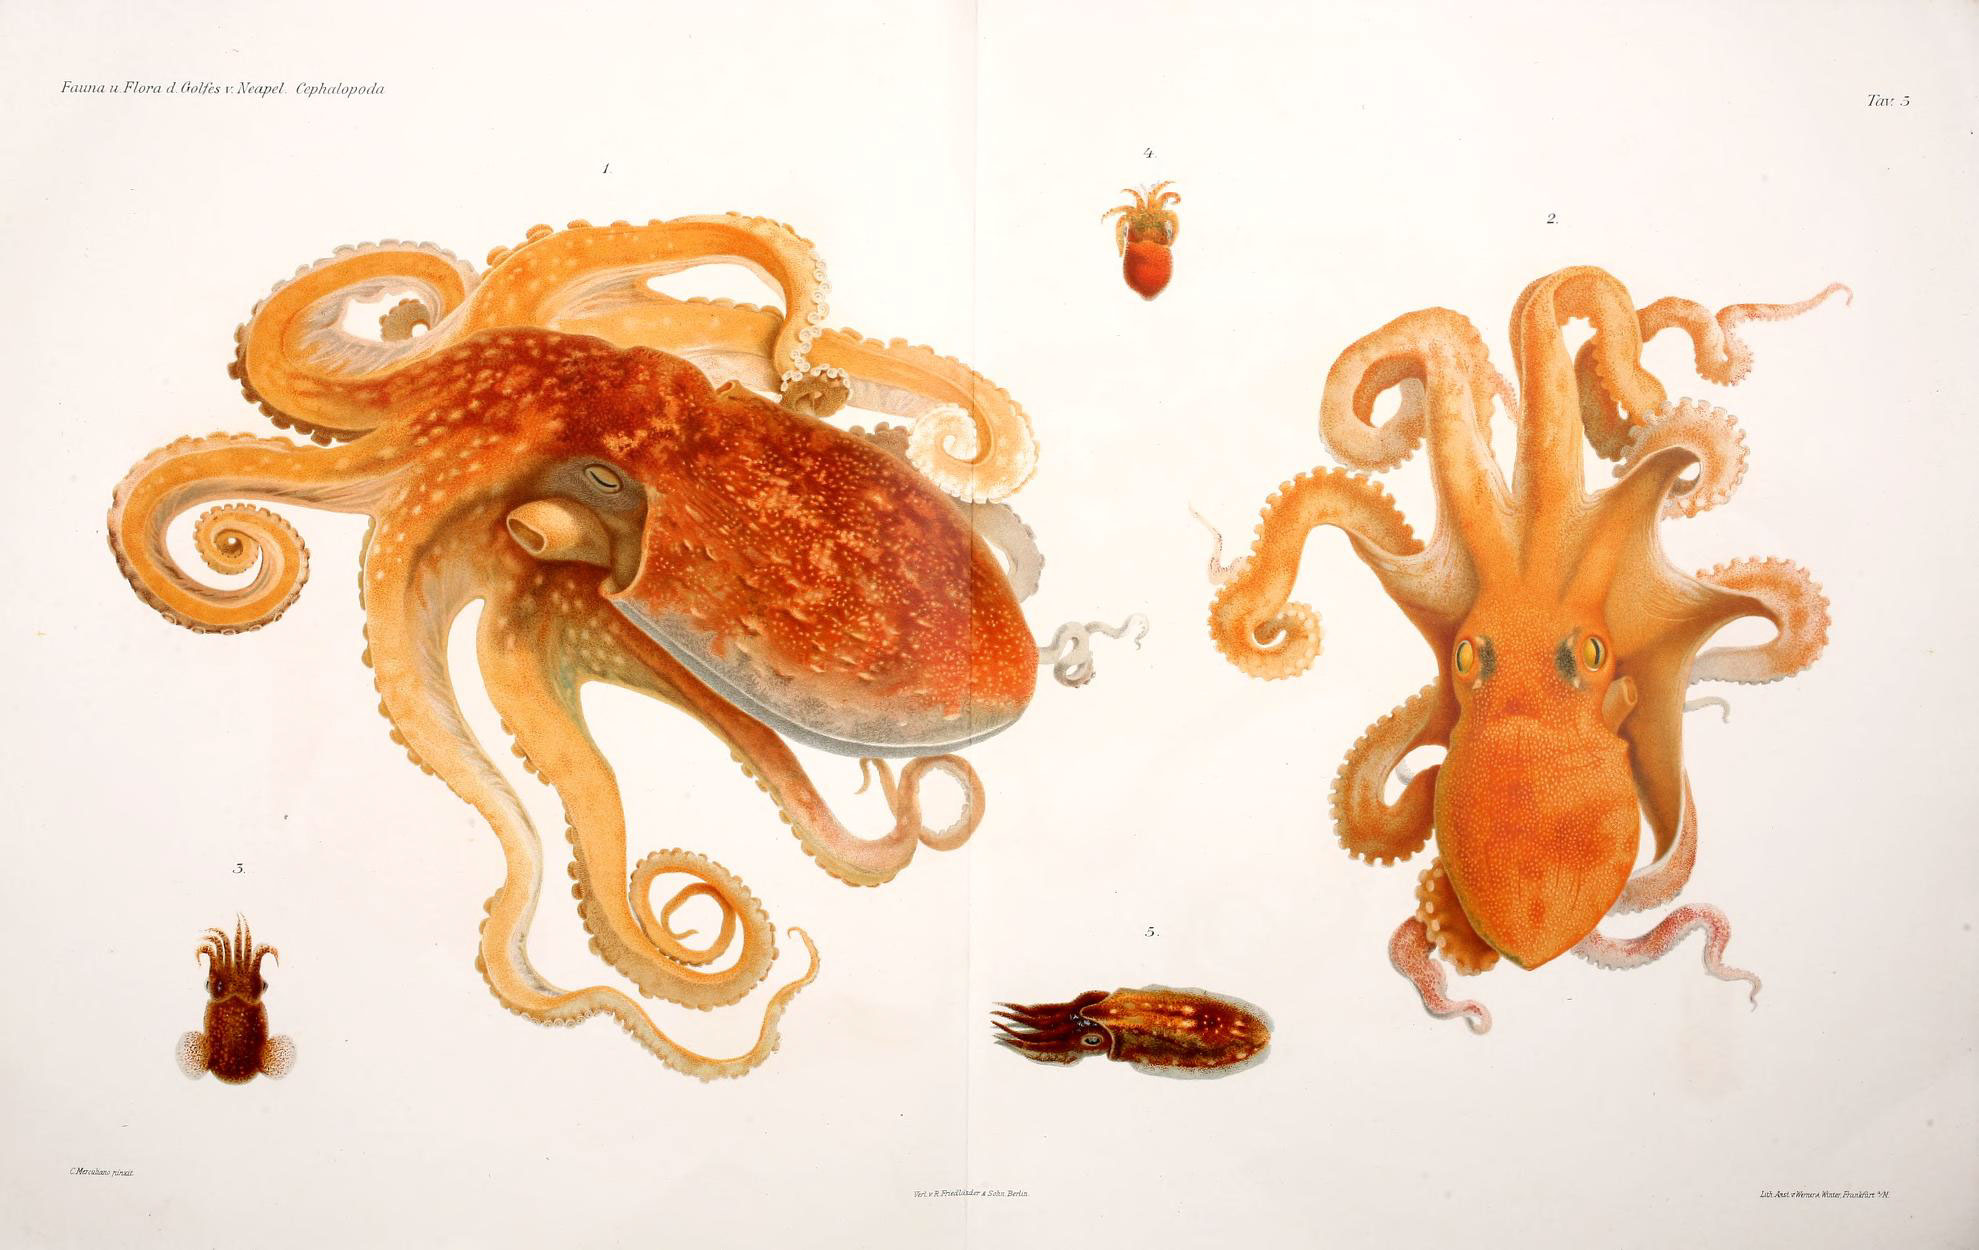 Jsou chobotnice „mimozemšťané“ z vesmíru? Jaký je původ tohoto záhadného tvora? 2